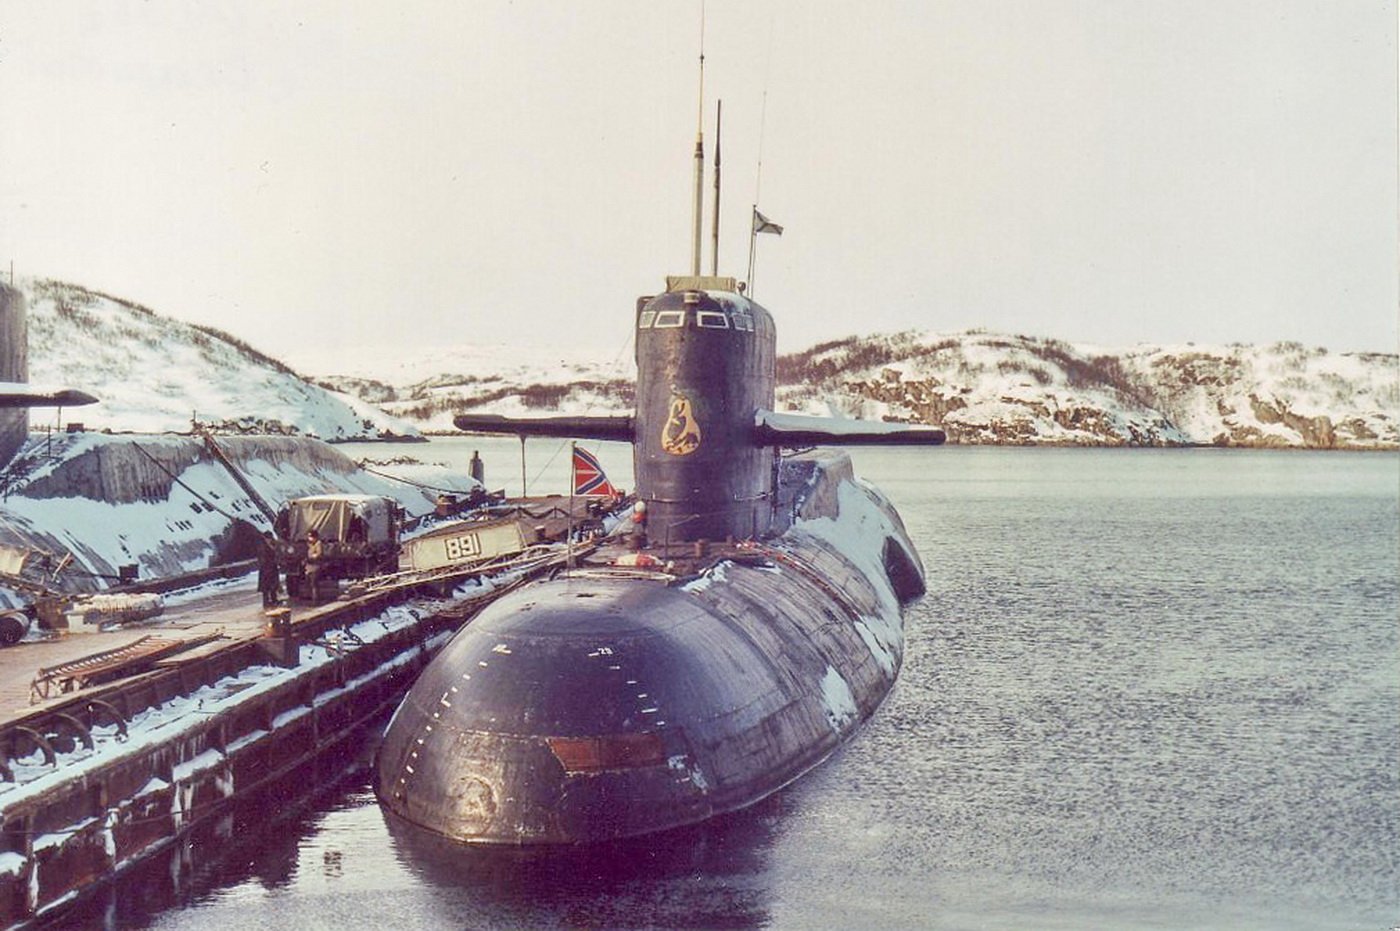 Пл пр т. Подводная лодка 667а навага. Проект 667ат груша. Подводная лодка проекта 667ртм. АПЛ 667 АТ груша.